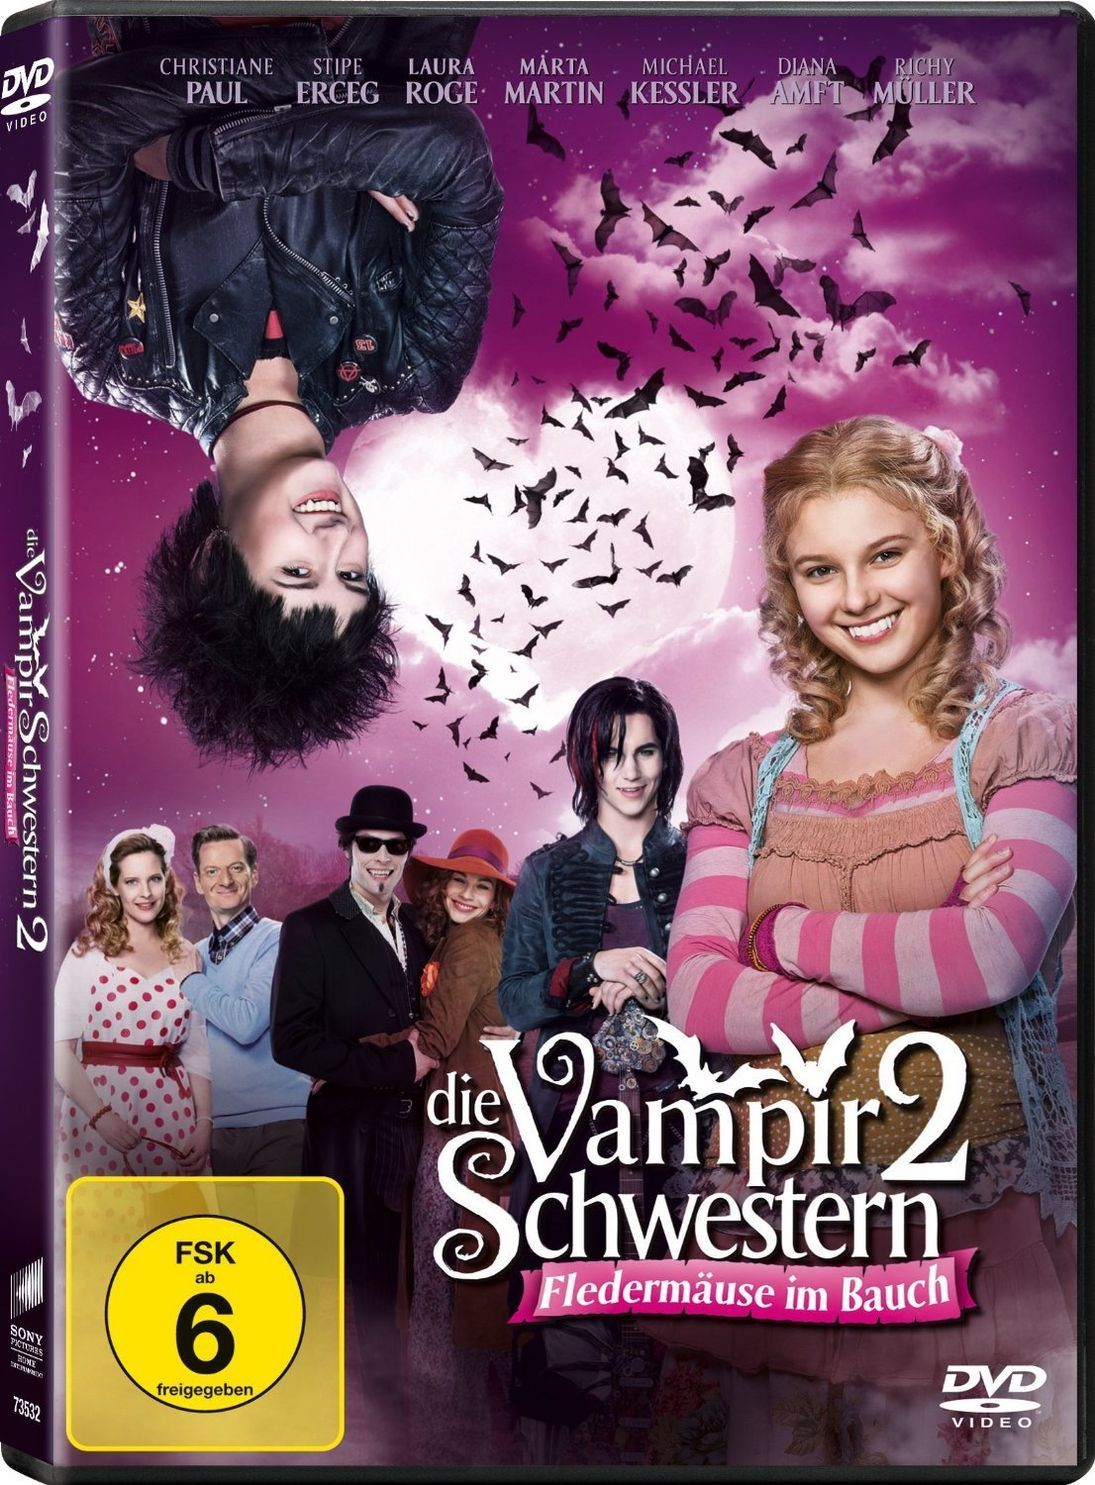 Die Vampirschwestern 2 - Fledermäuse im Bauch DVD | Weltbild.ch